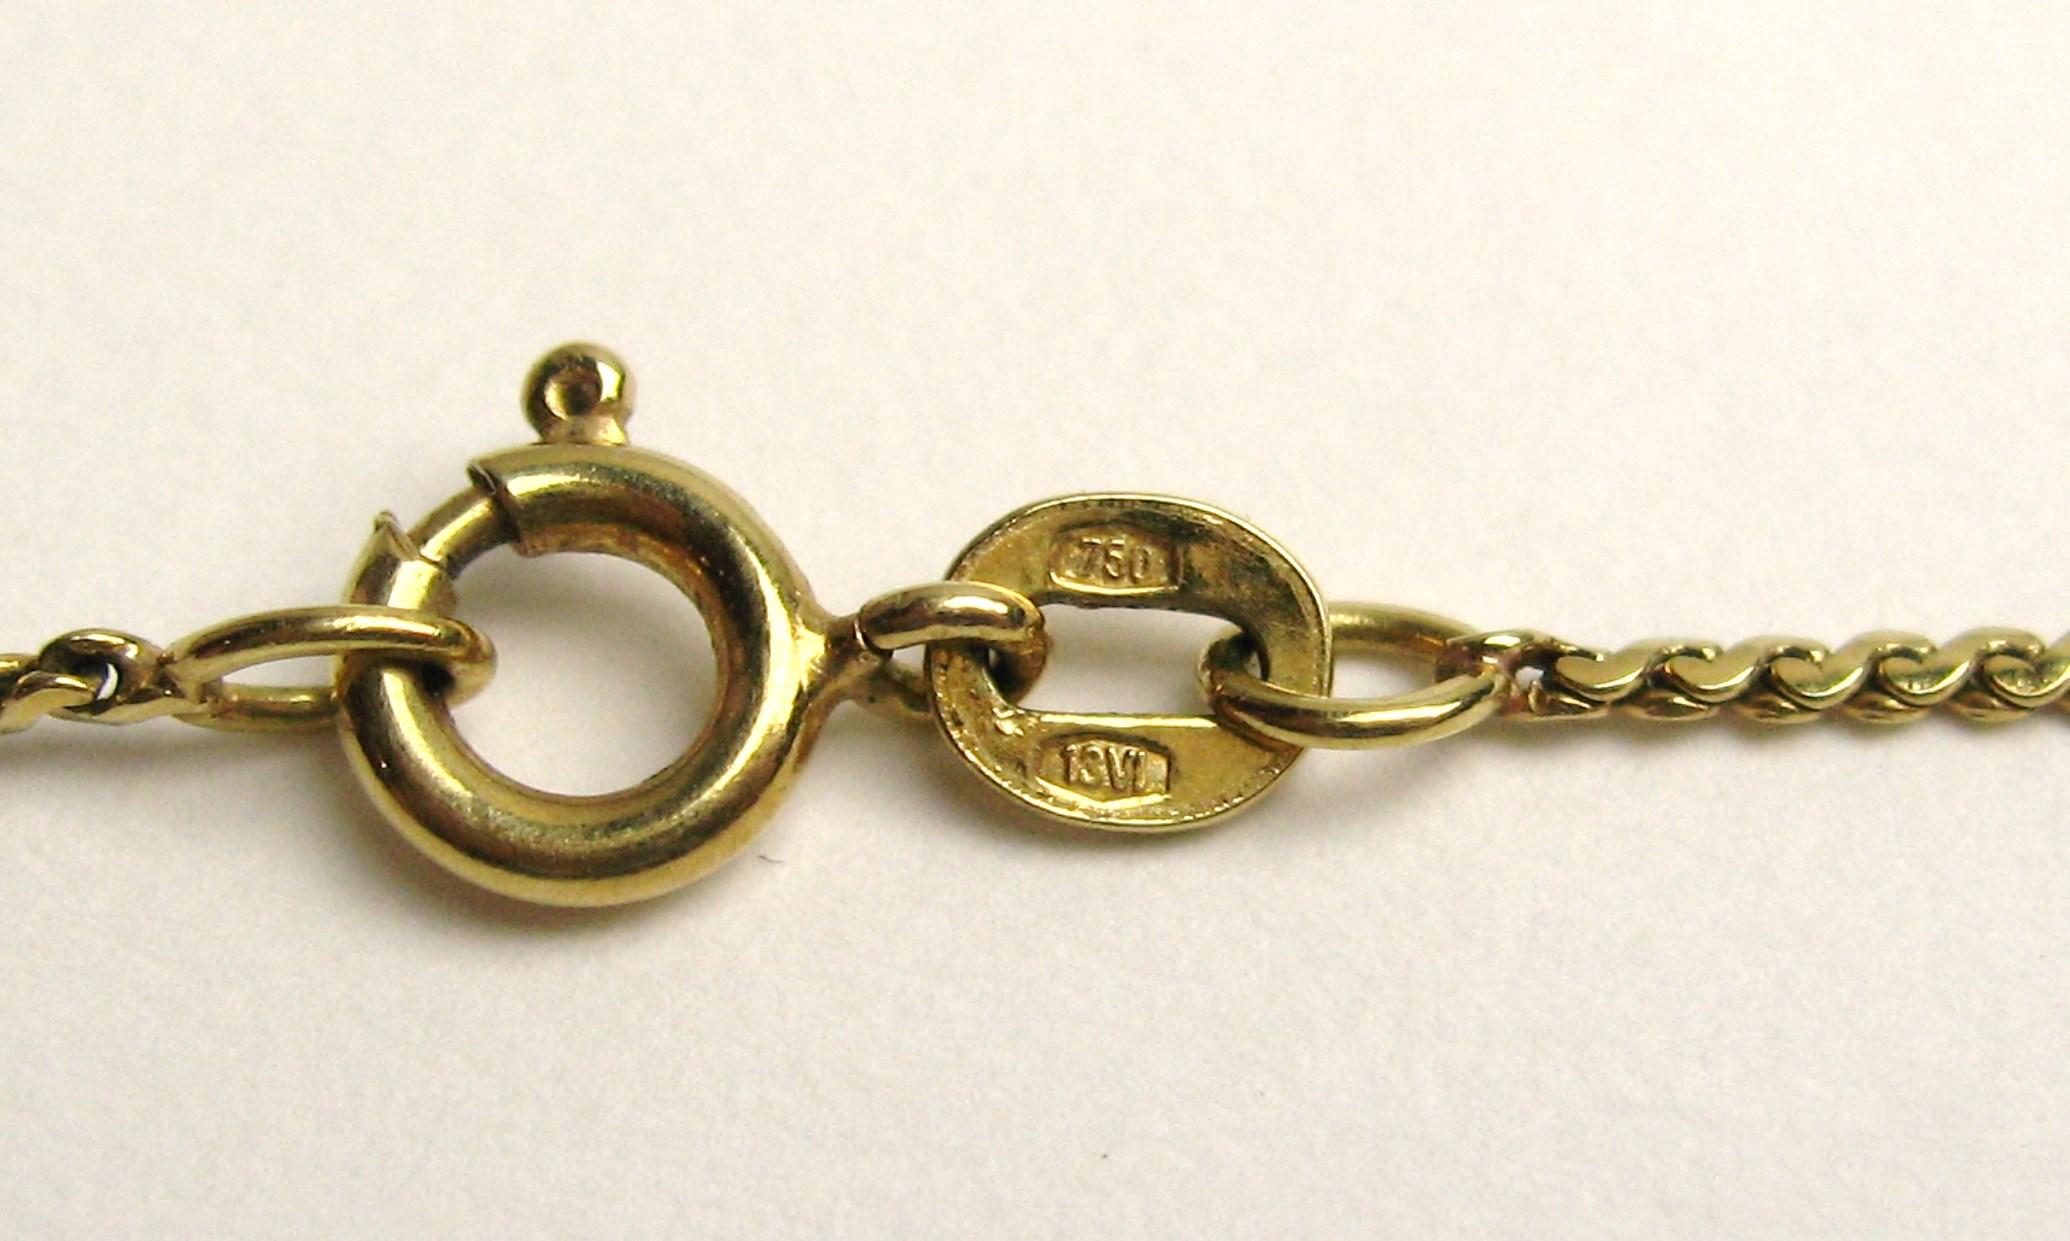 18 Karat Gold Citrine Star Motif Pendant Necklace Brooch 45 Carat For Sale 3